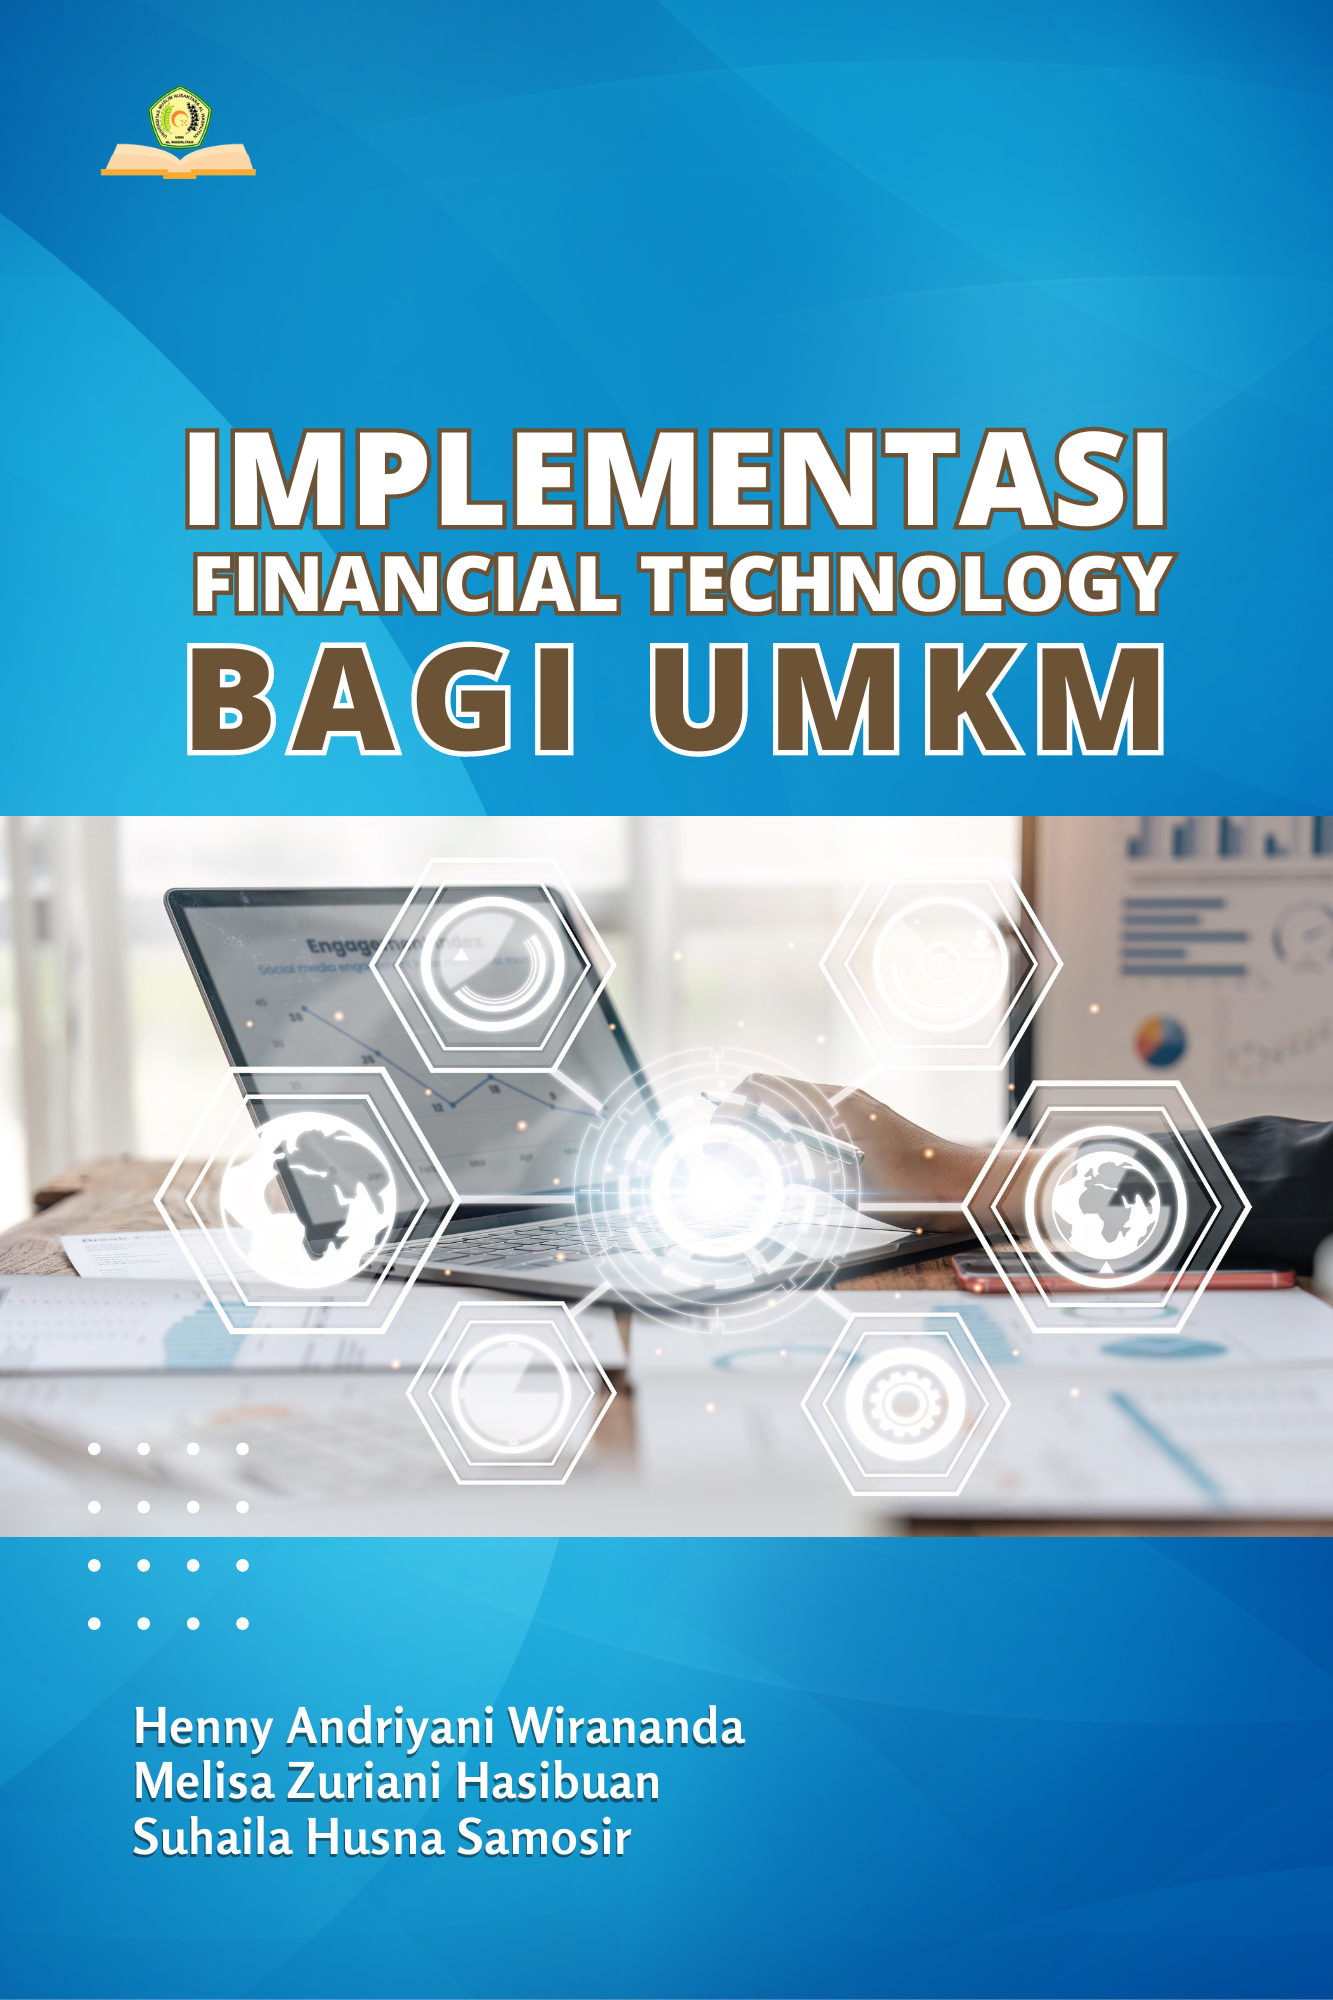 Implementasi Financial Technology Bagi UMKM